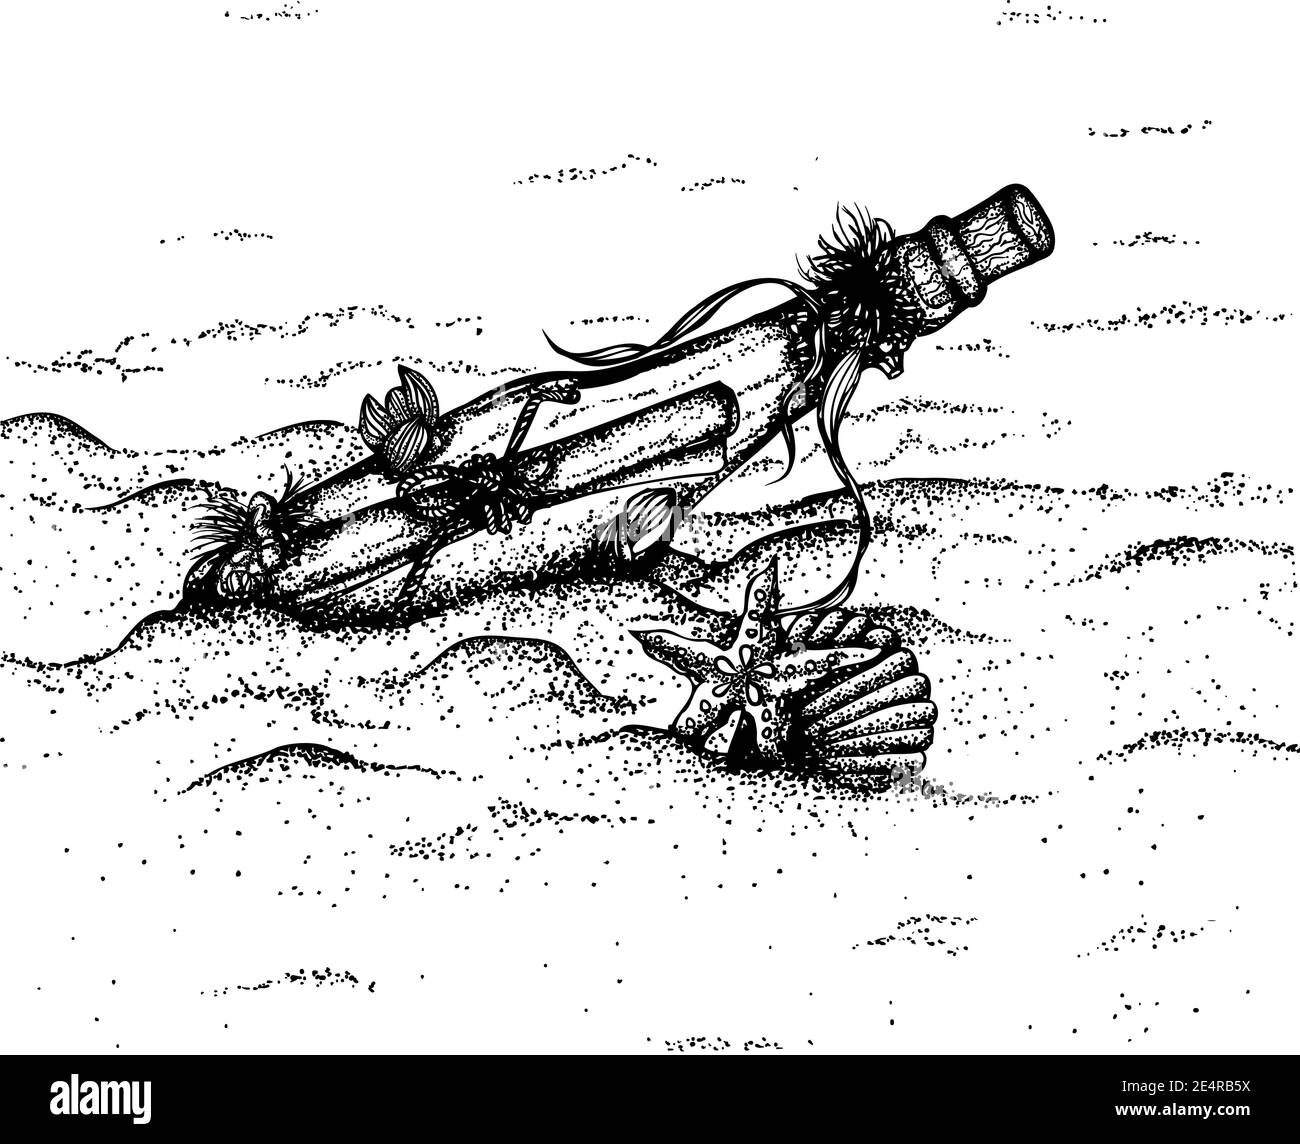 Messaggio in una bottiglia sdraiata su una spiaggia di sabbia. Illustrazione vettoriale disegnata a mano. Disegno monocromatico isolato su sfondo bianco Illustrazione Vettoriale